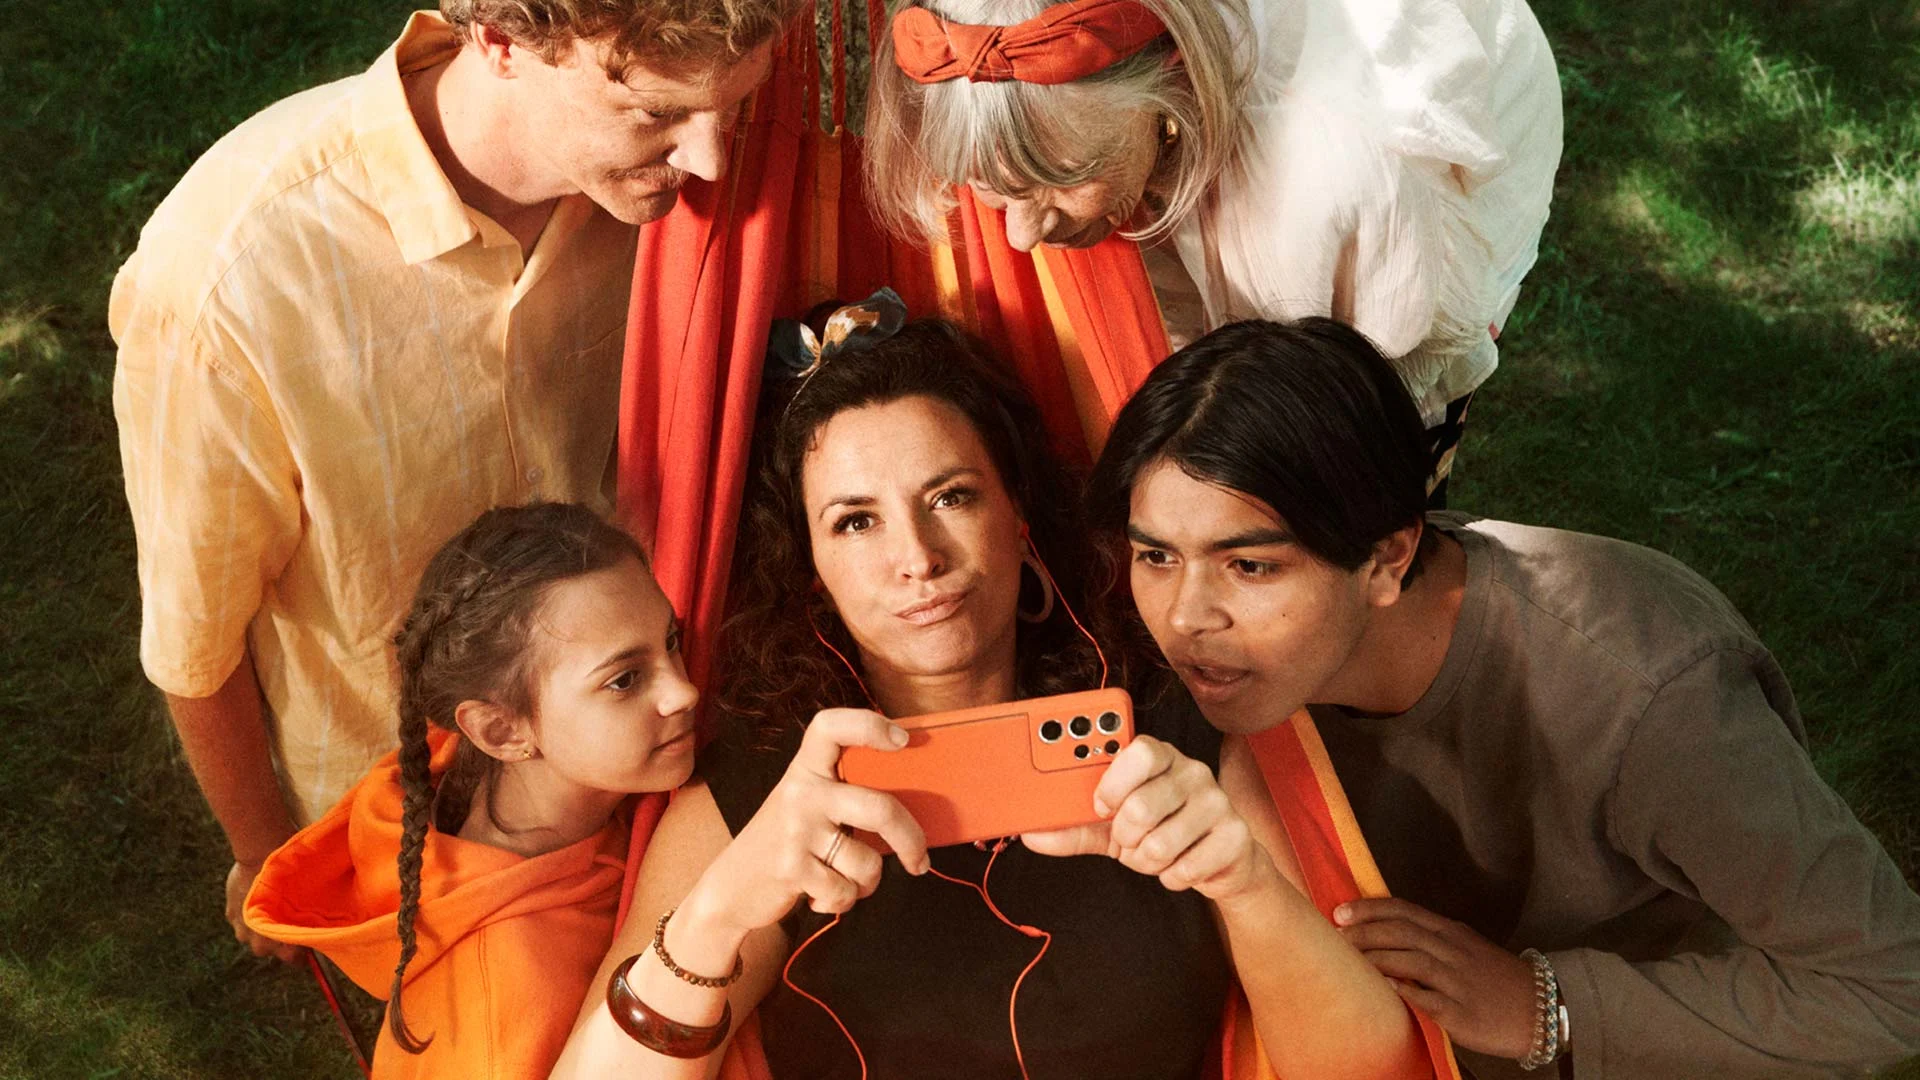 En kvinna ligger i en orange hängmatta med en mobil, personer står unt omkring fr att också titta.